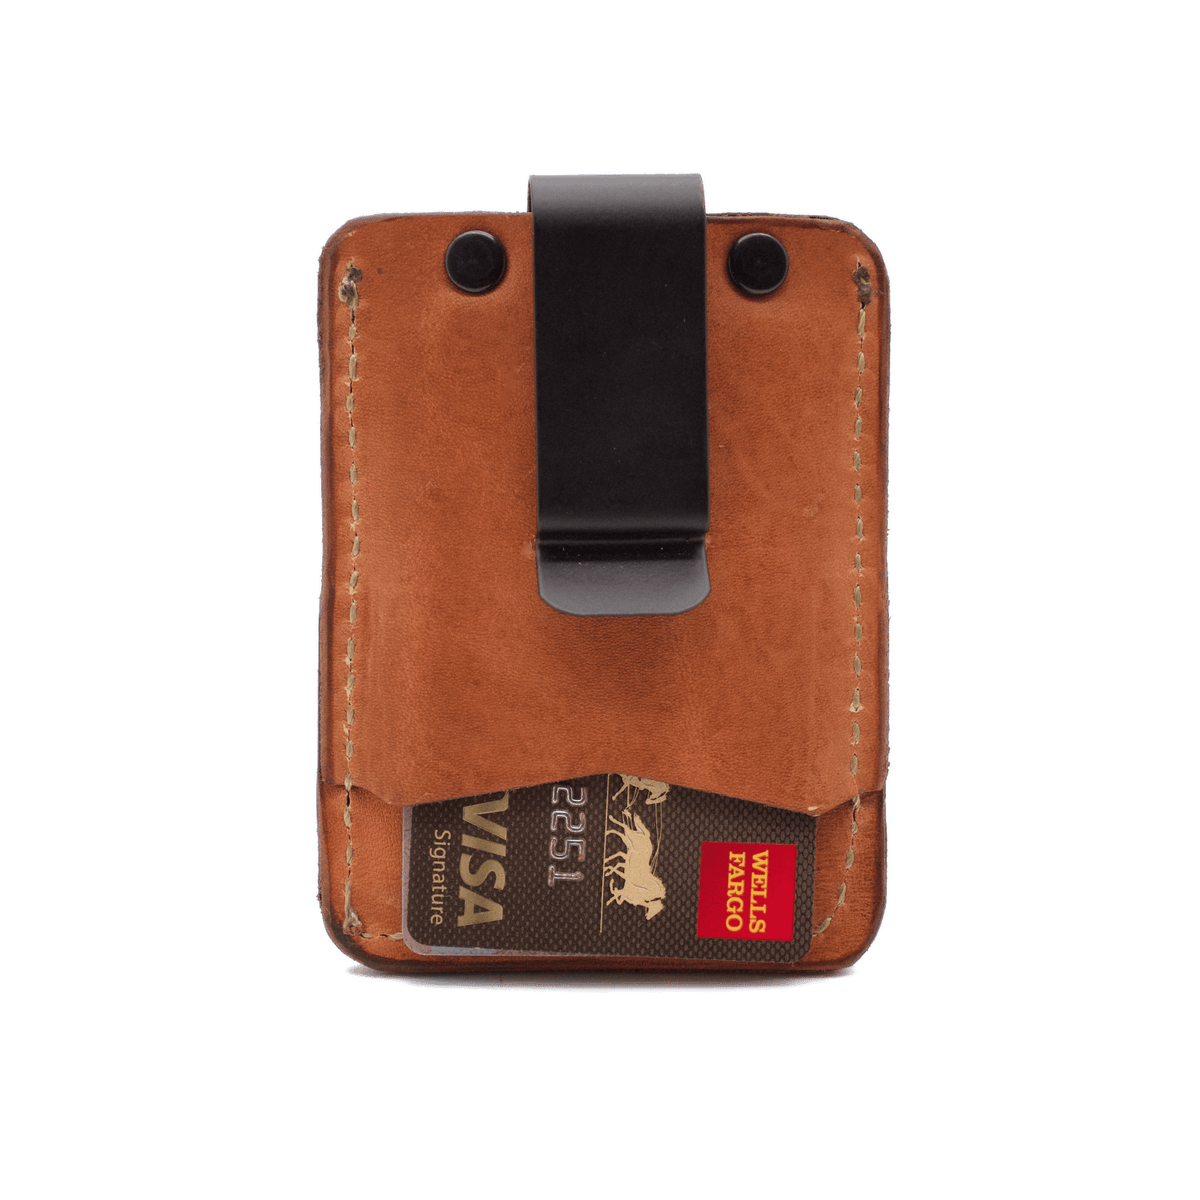 The OAK CREEK Ventura Minimalist Leather Wallet in Hermann Oak® Natural Harness